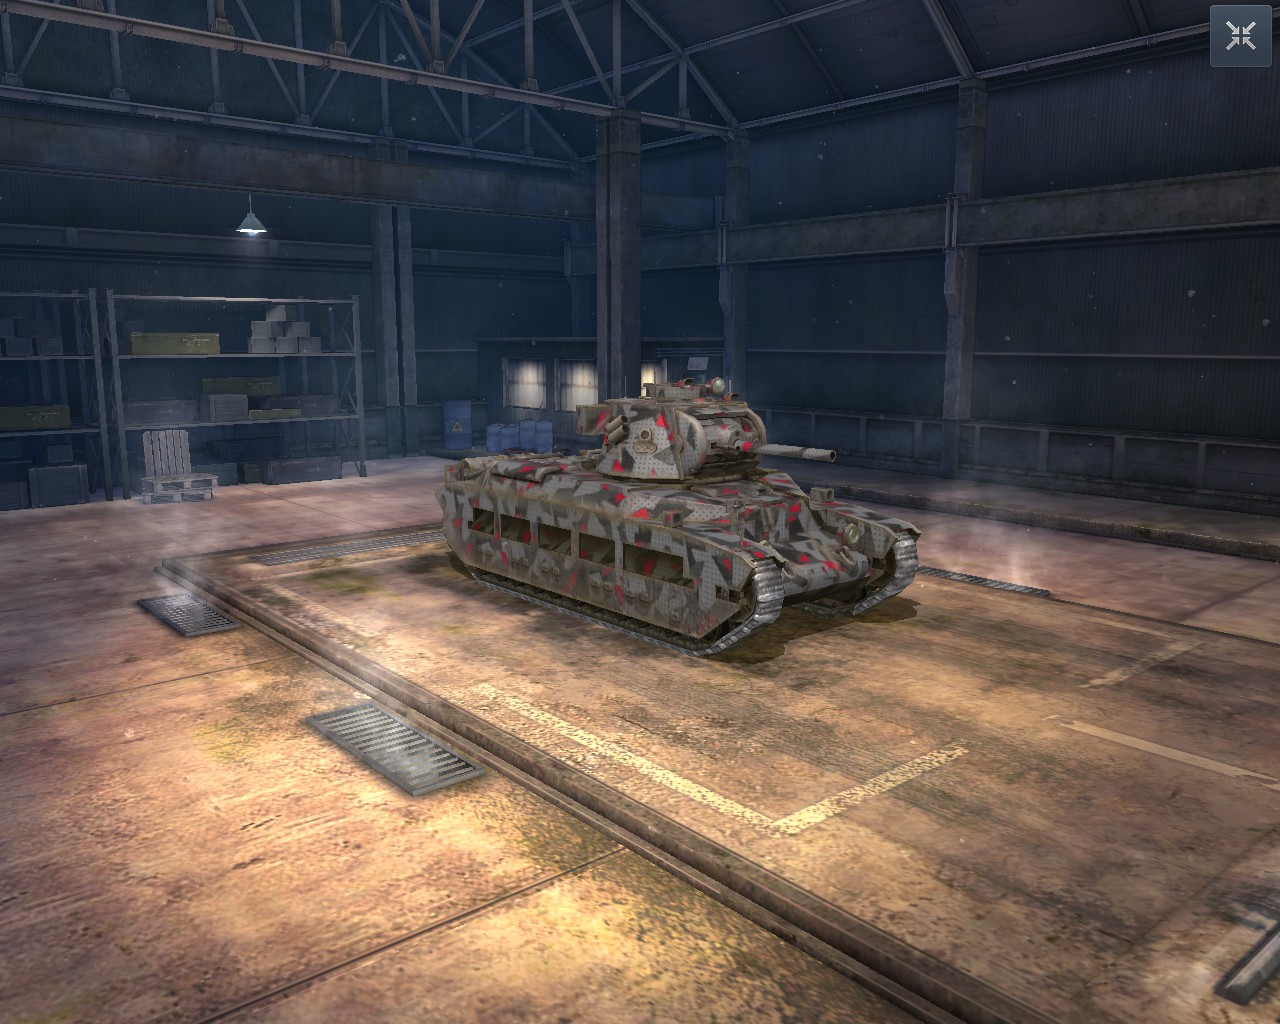 Камуфляж «Кей-найн» из патча 1.13 World of Tanks | WOT Express первоисточник новостей